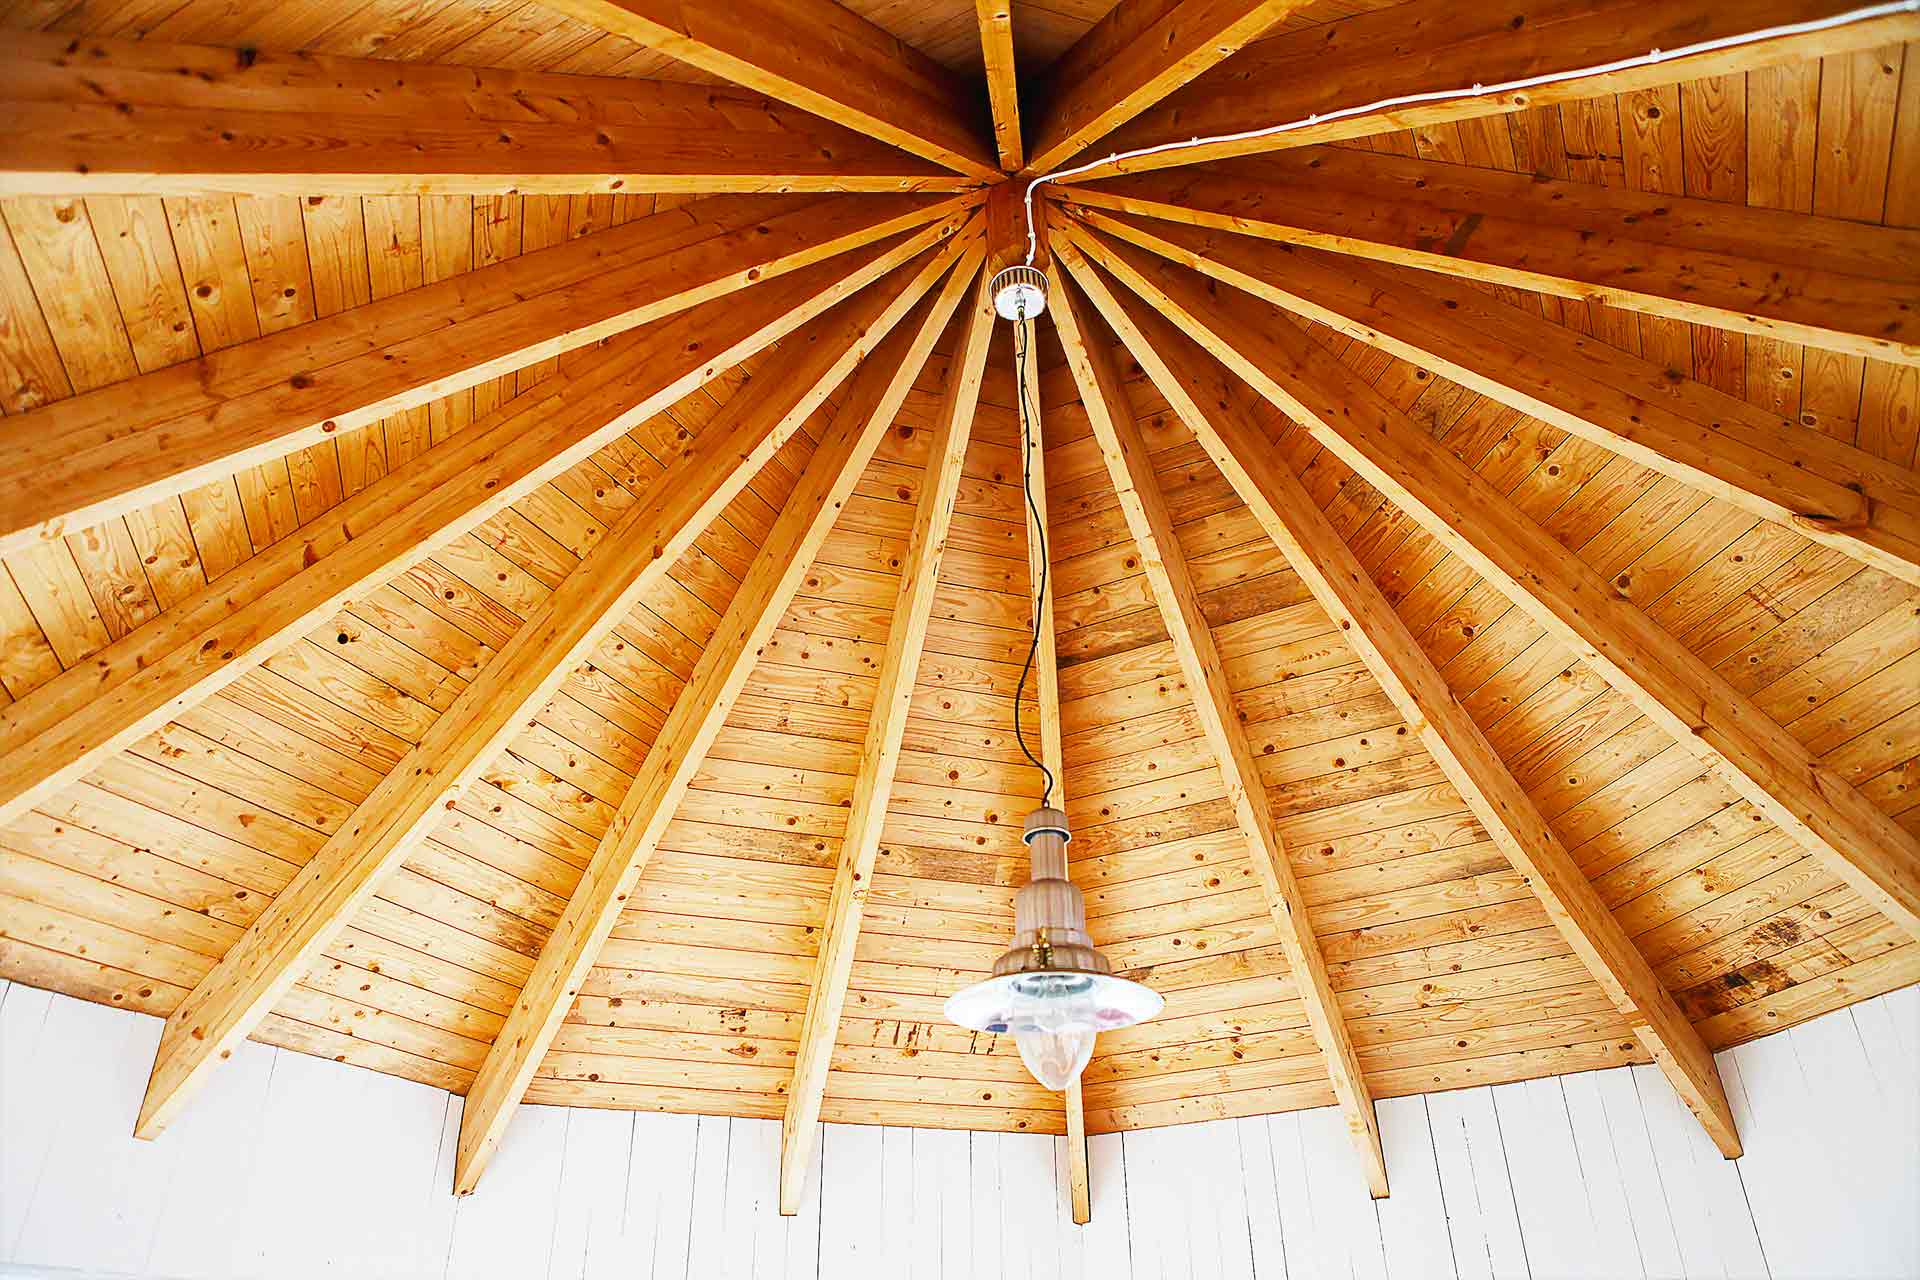 Takstolar i ett åttkantigt rum strålar samman i takets mitt varifrån en metall-lampa hänger. Arkitekt är Anders Frelin.